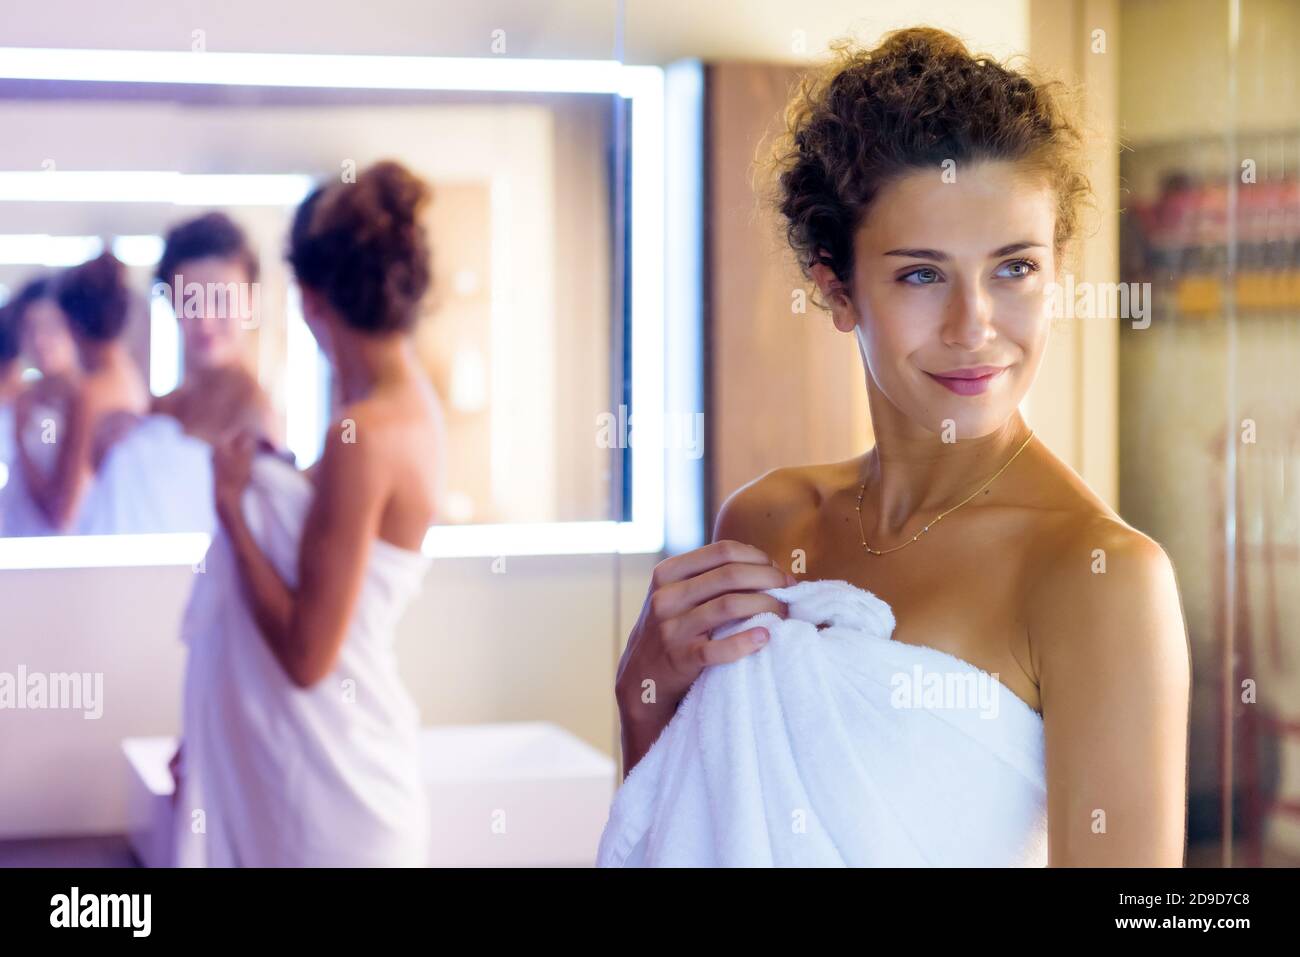 Donna sorridente riflessa più volte in uno specchio come lei posa in un asciugamano bianco pulito nella preparazione del bagno per una doccia Foto Stock